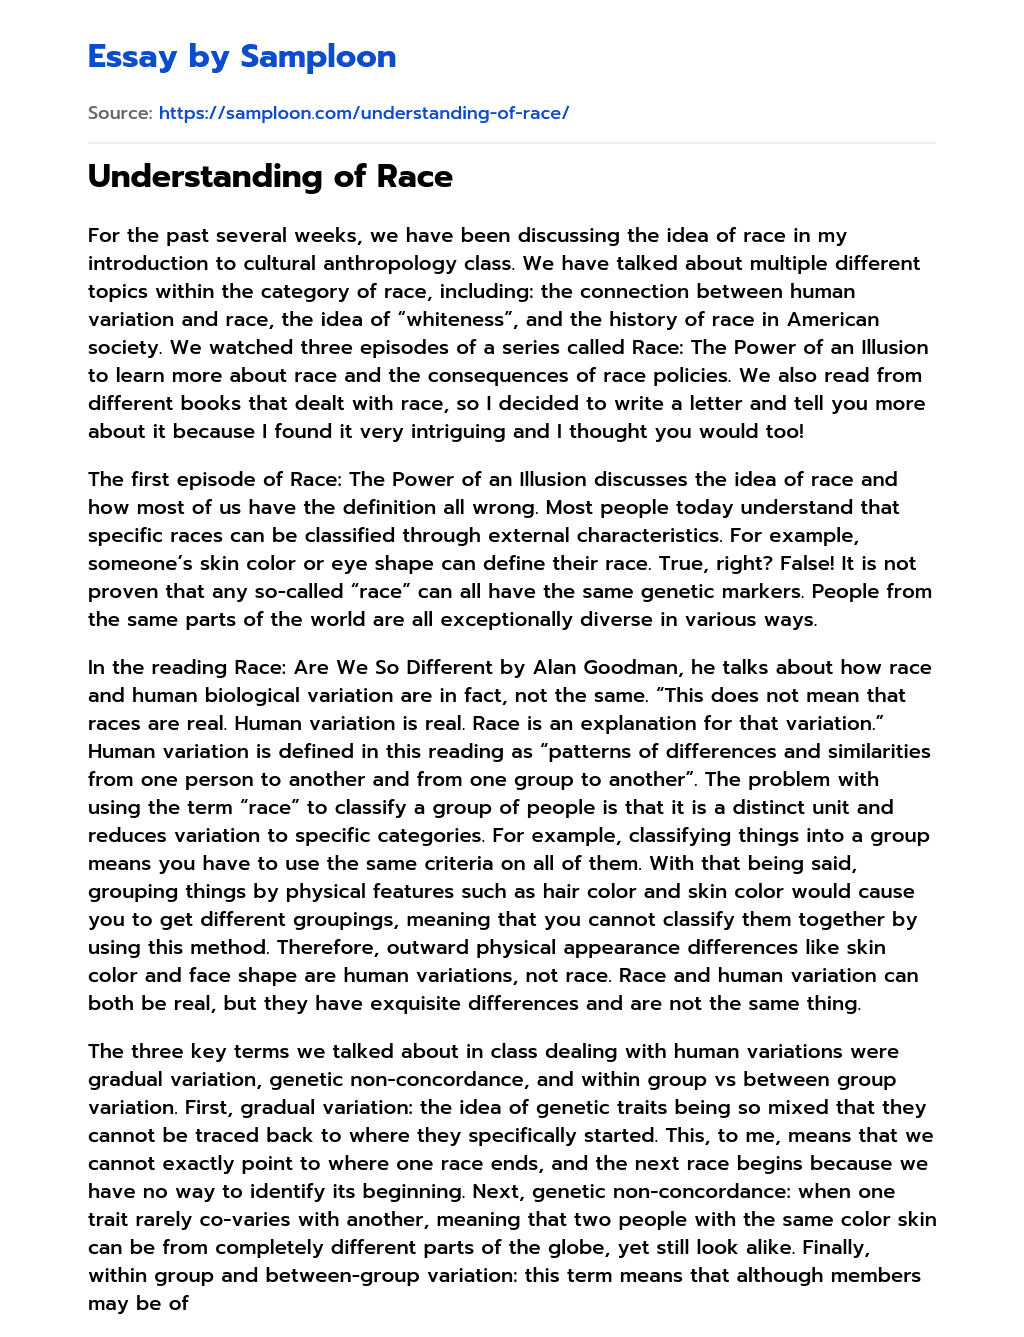 Understanding of Race essay